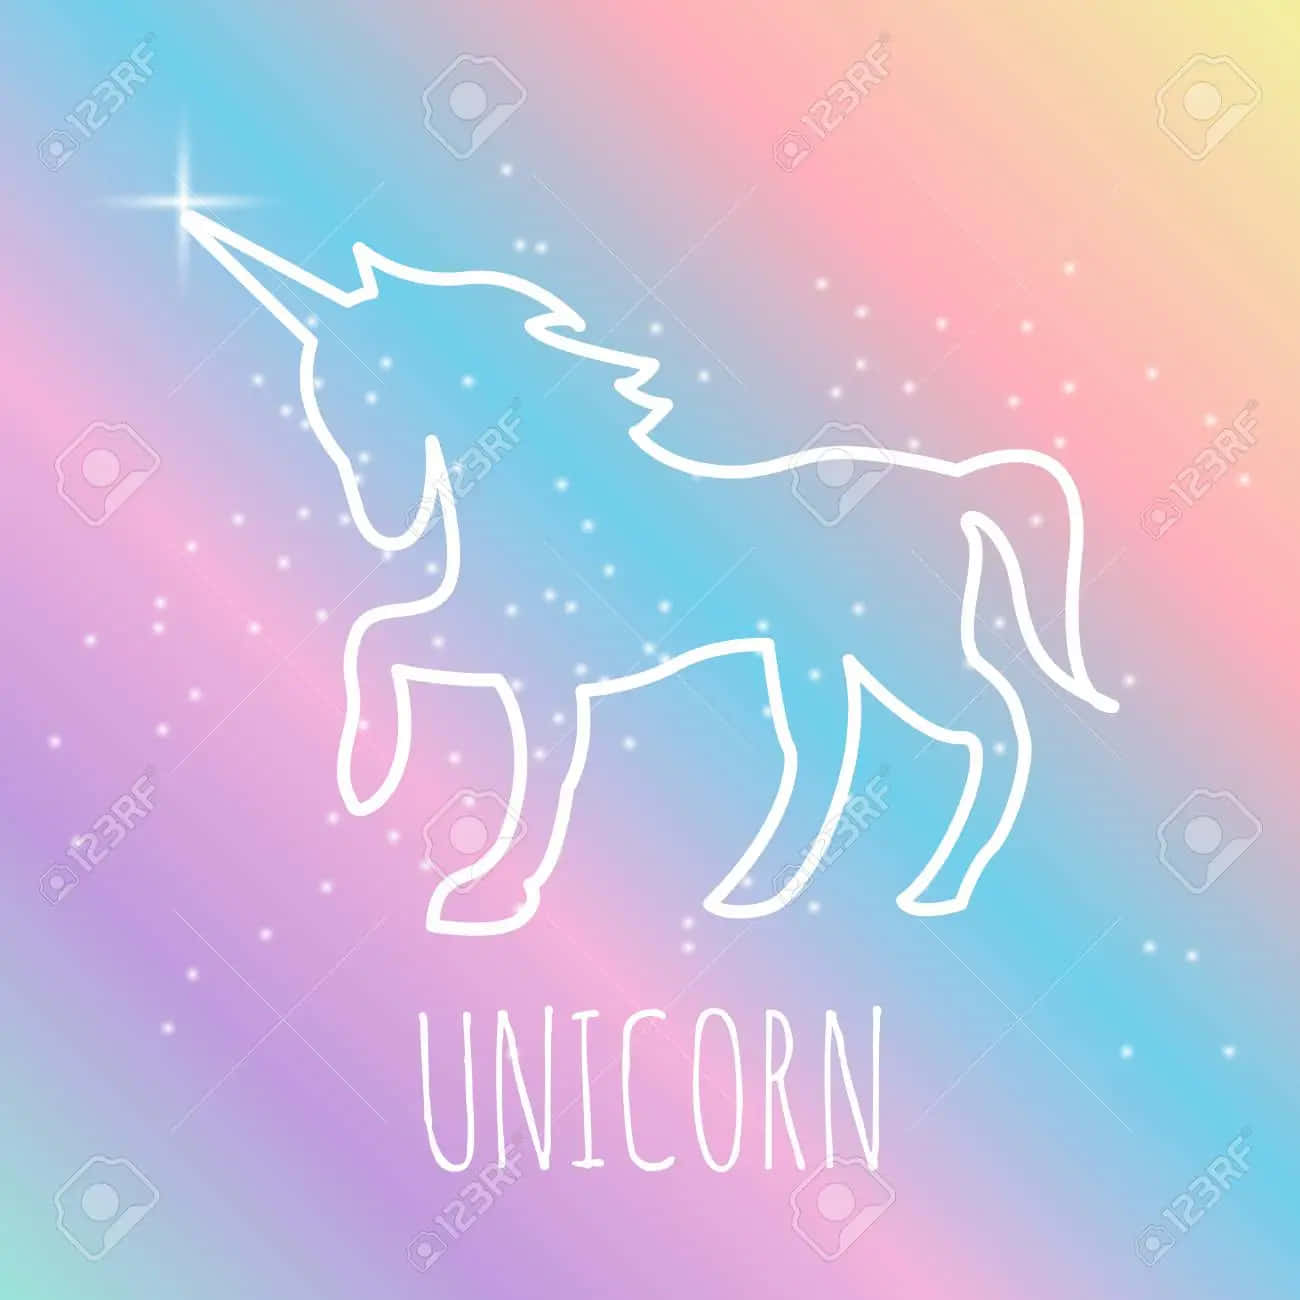 Unhermoso Unicornio De Colores Pasteles Rodeado De Flores. Fondo de pantalla